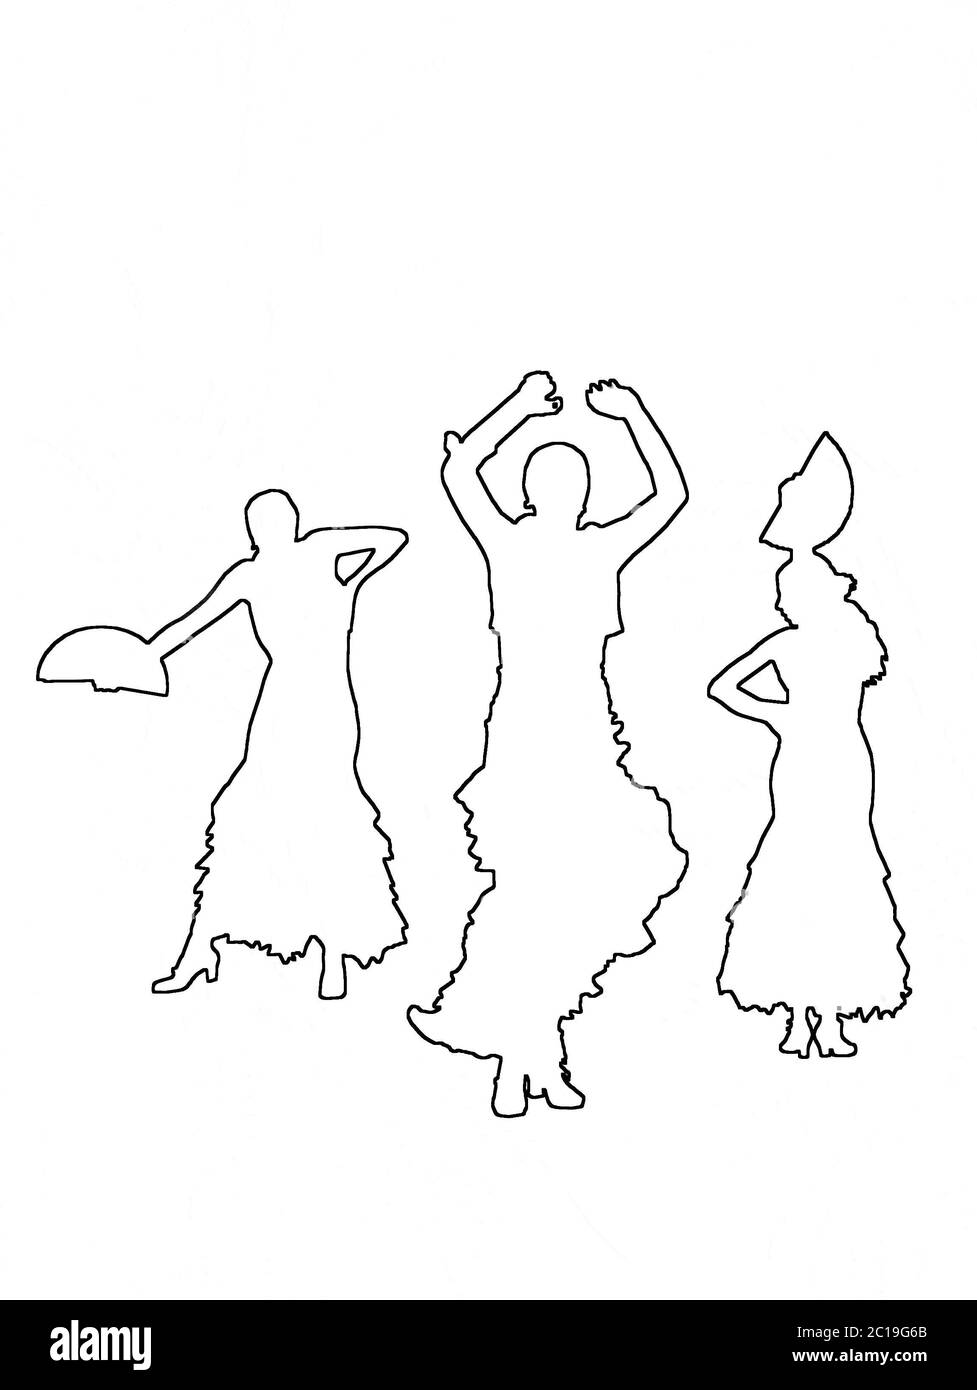 Silhouettes de trois danseuses de flamenco Banque D'Images